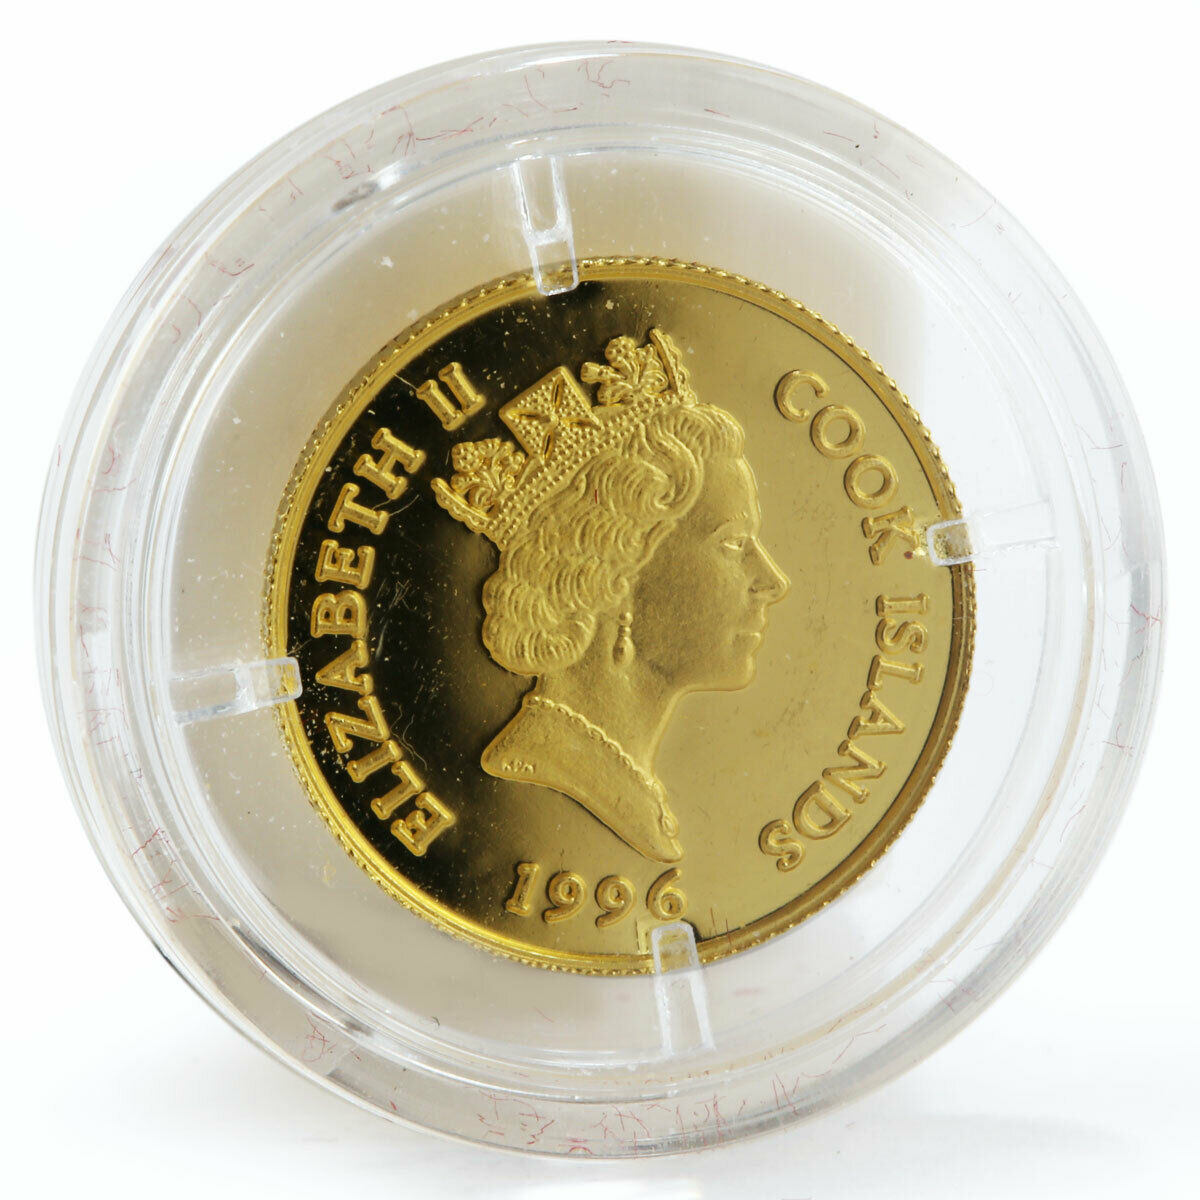 Cook Islands 20 dollars Friedrich Von Schiller proof gold coin 1996